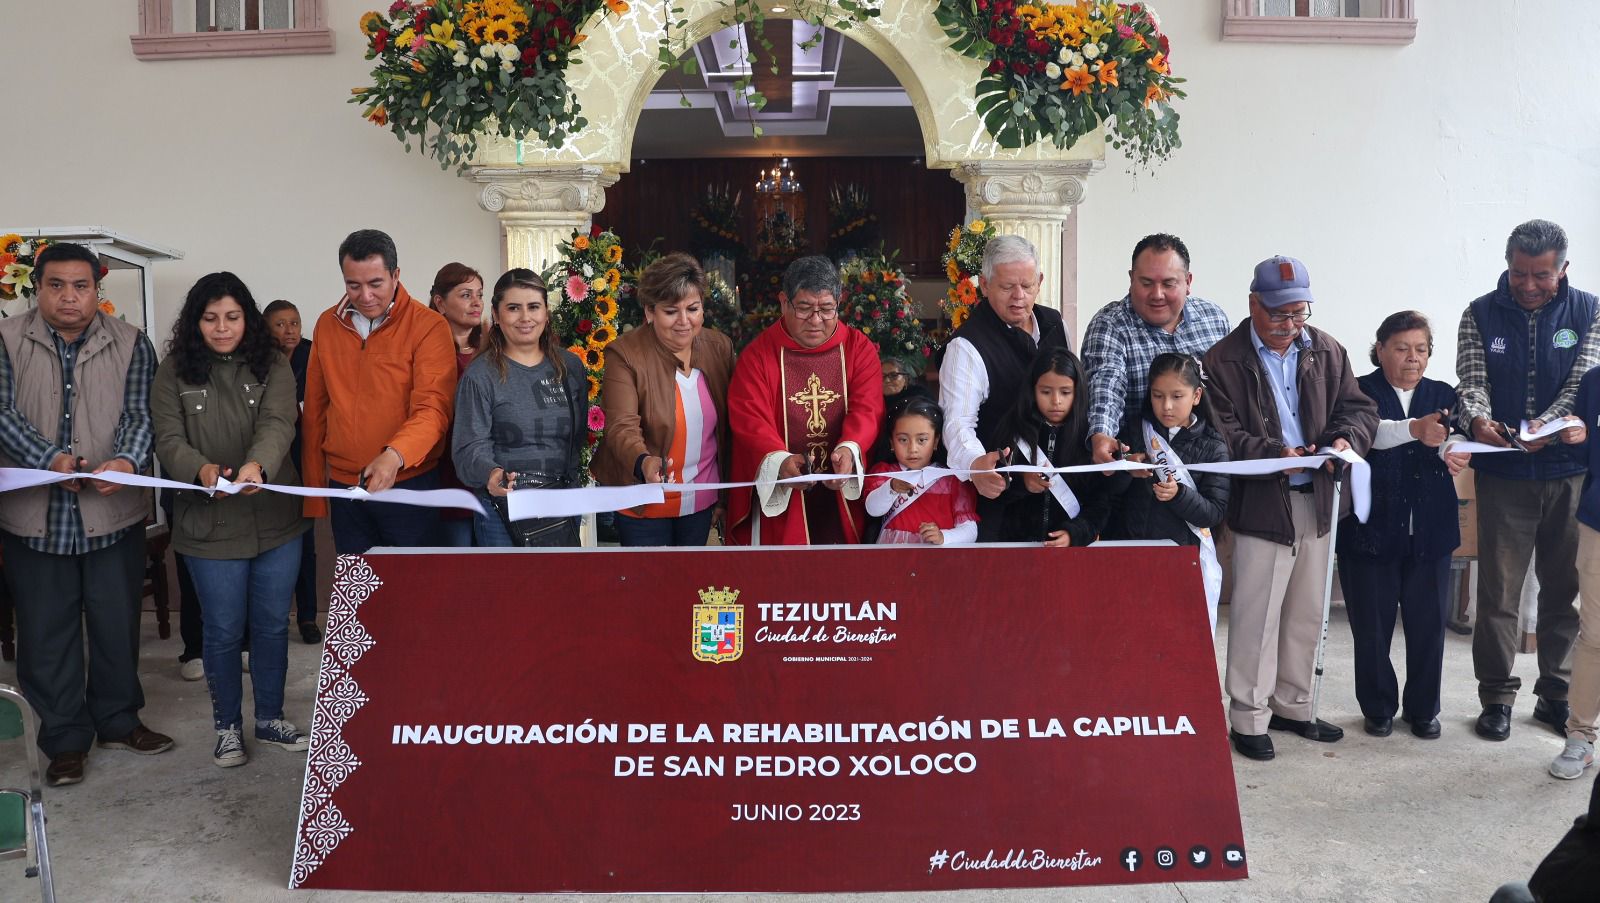 Carlos Peredo cortó el listón inaugural de la rehabilitación de la Capilla de San Pedro Xoloco